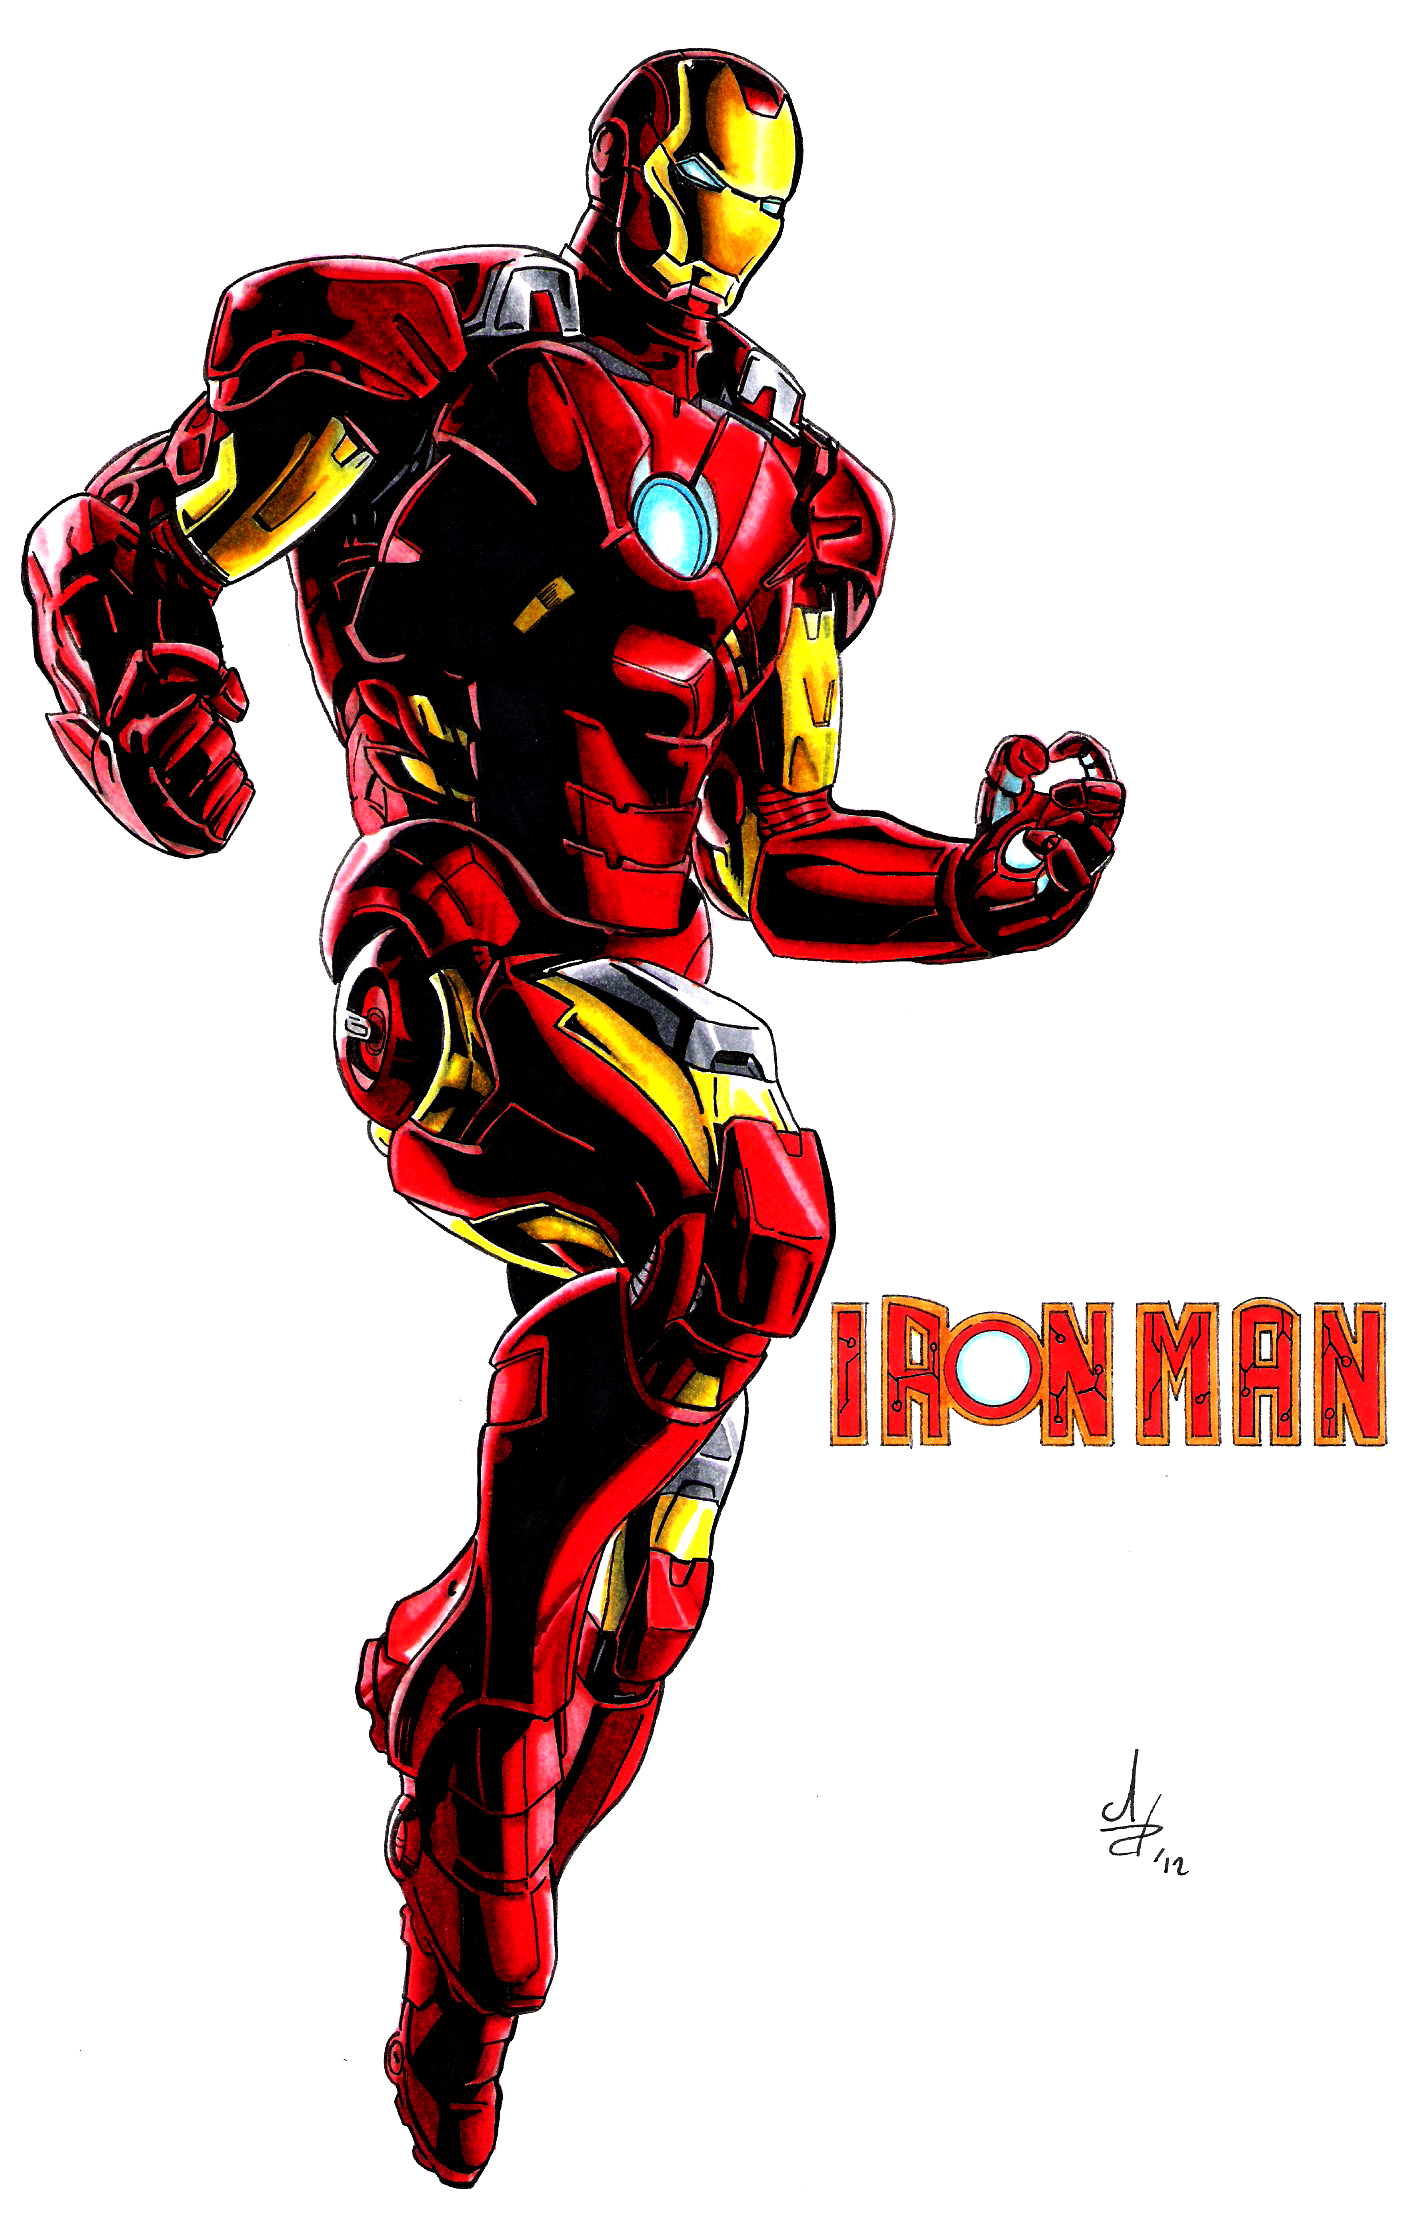 Iron Man comic cartoon wallpapers